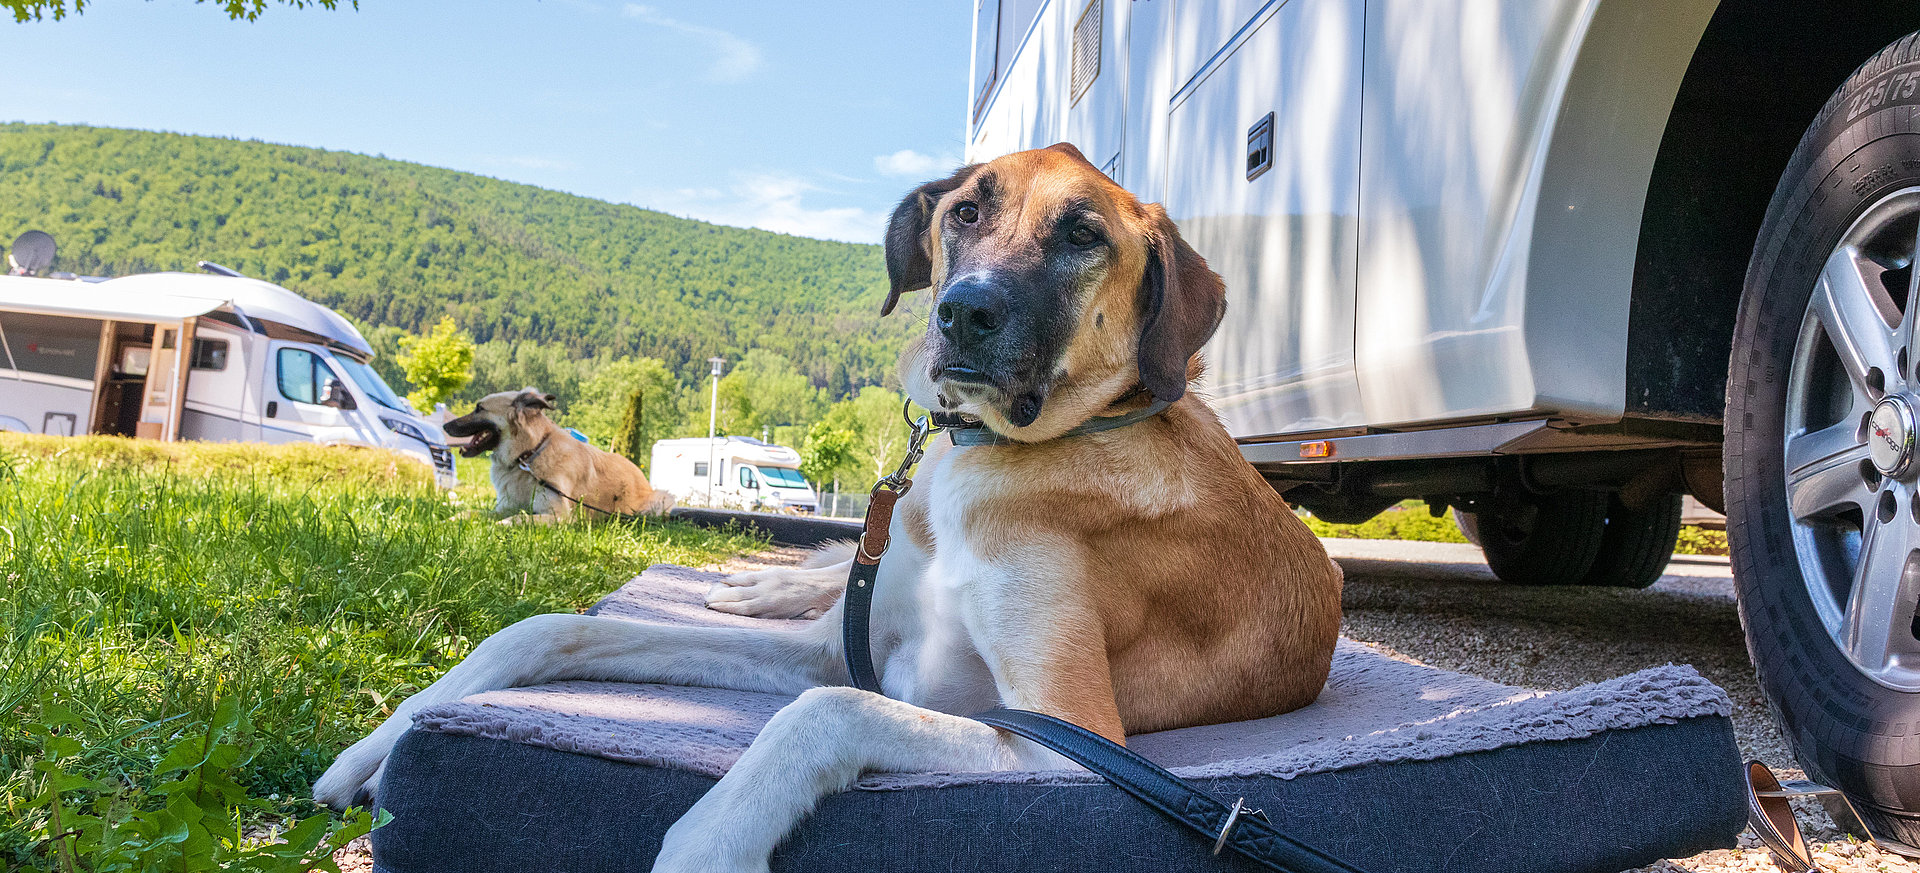 Sie möchten mit Ihrem Hund in den Camping-Urlaub fahren? Damit Ihre Reise mit dem Wohnwagen oder Wohnmobil auch für Ihren Vierbeiner ein schönes Erlebnis wird, finden Sie bei uns nützliche Tipps und Tricks.